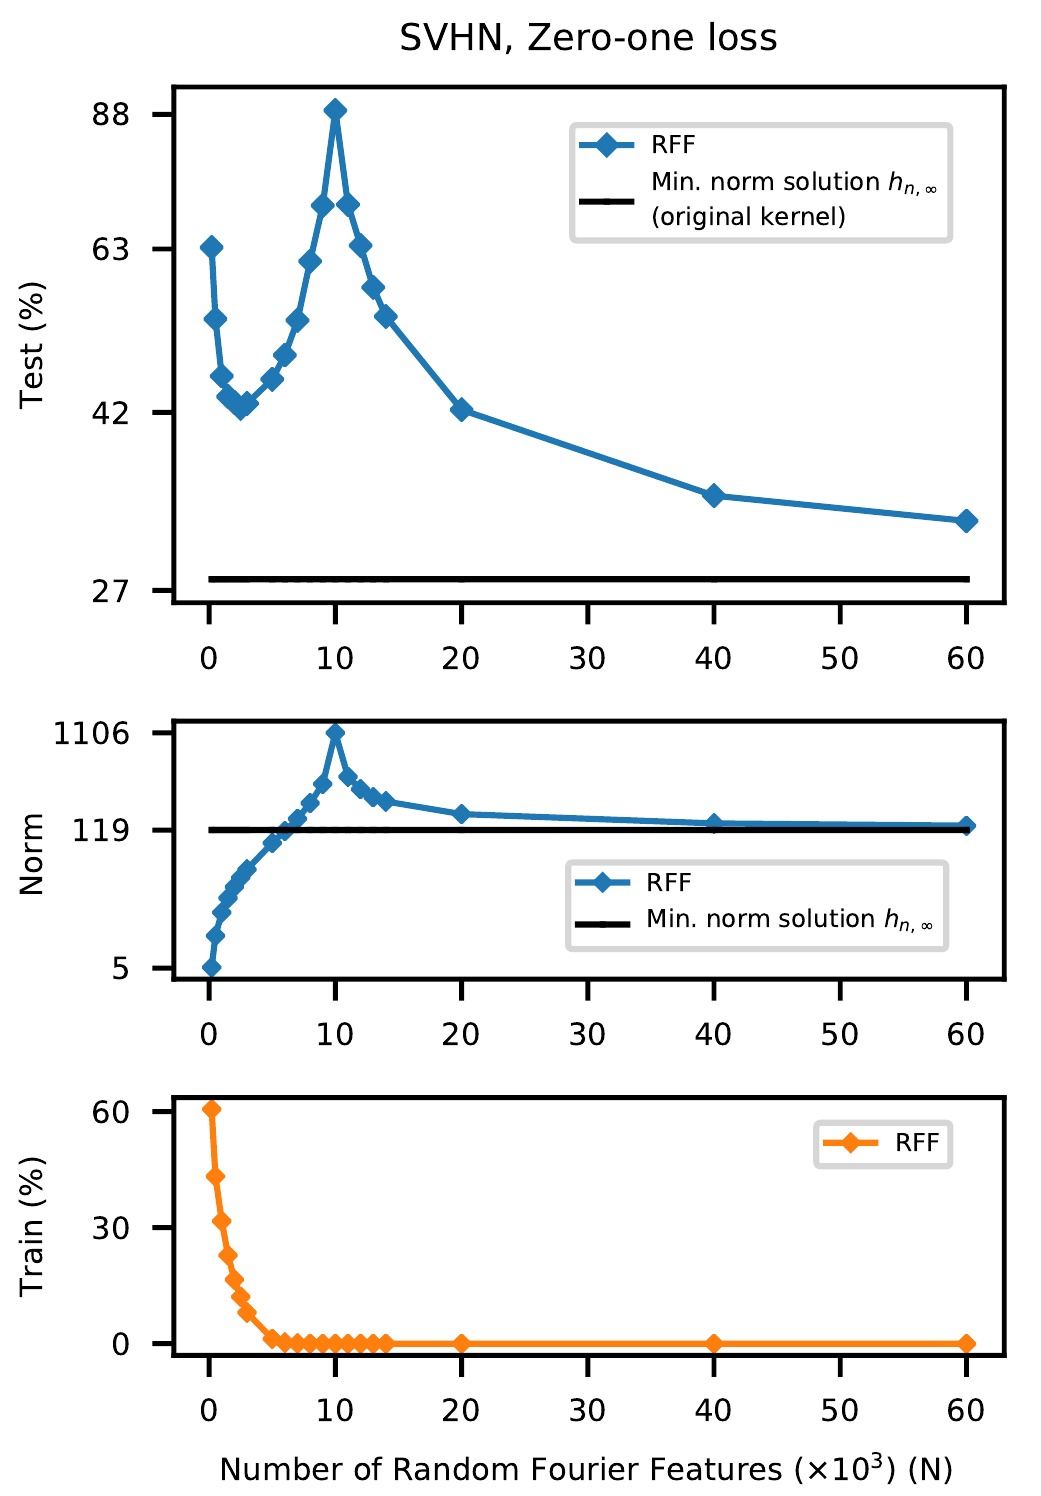 Кривая двойного спуска для RFF модели на SVHN датасете, изображение из статьи